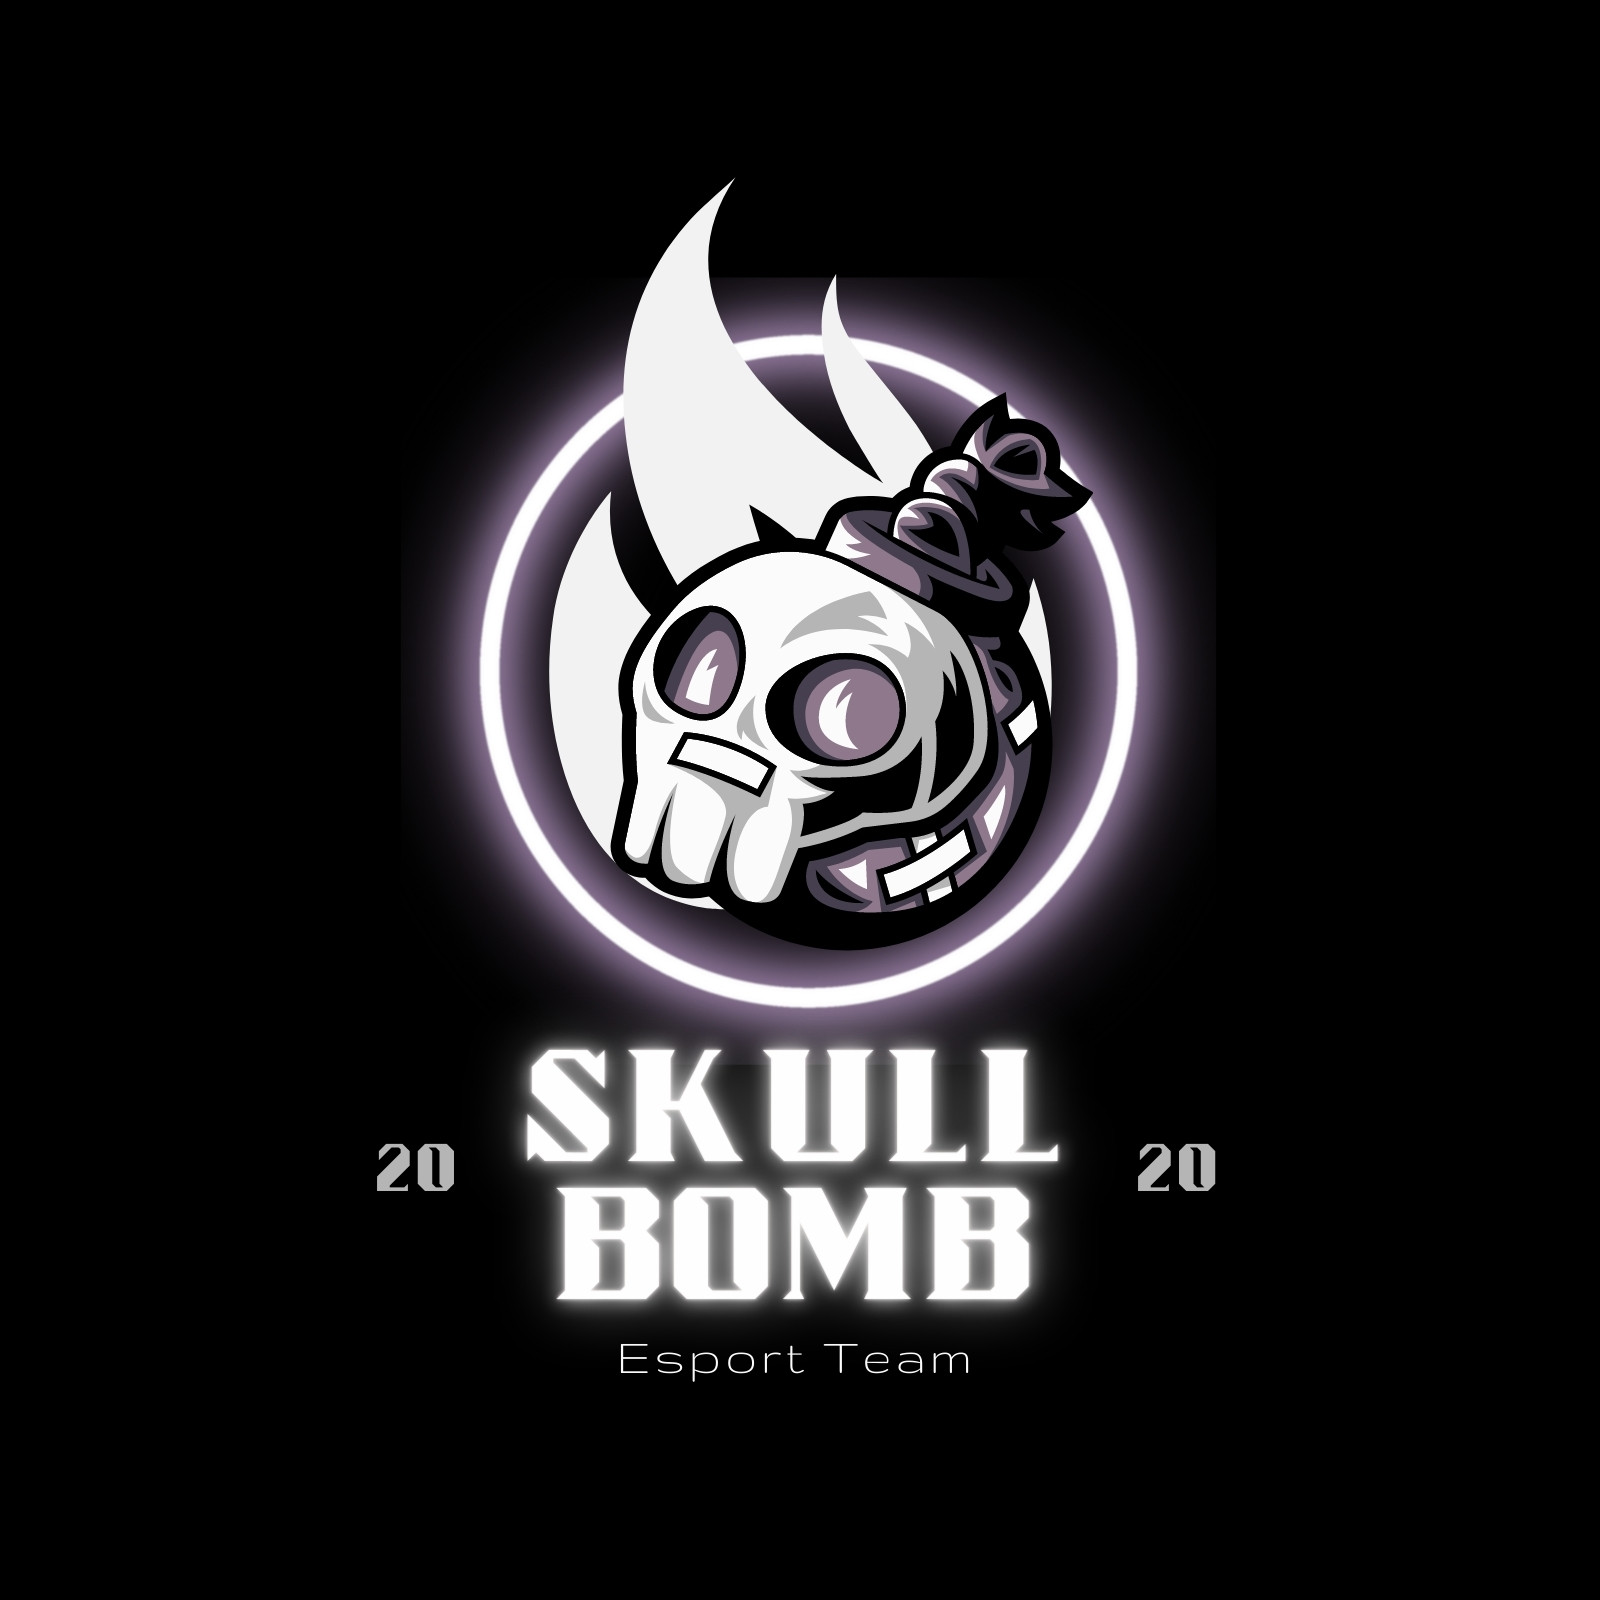 Black Skull E-sport Team Logo